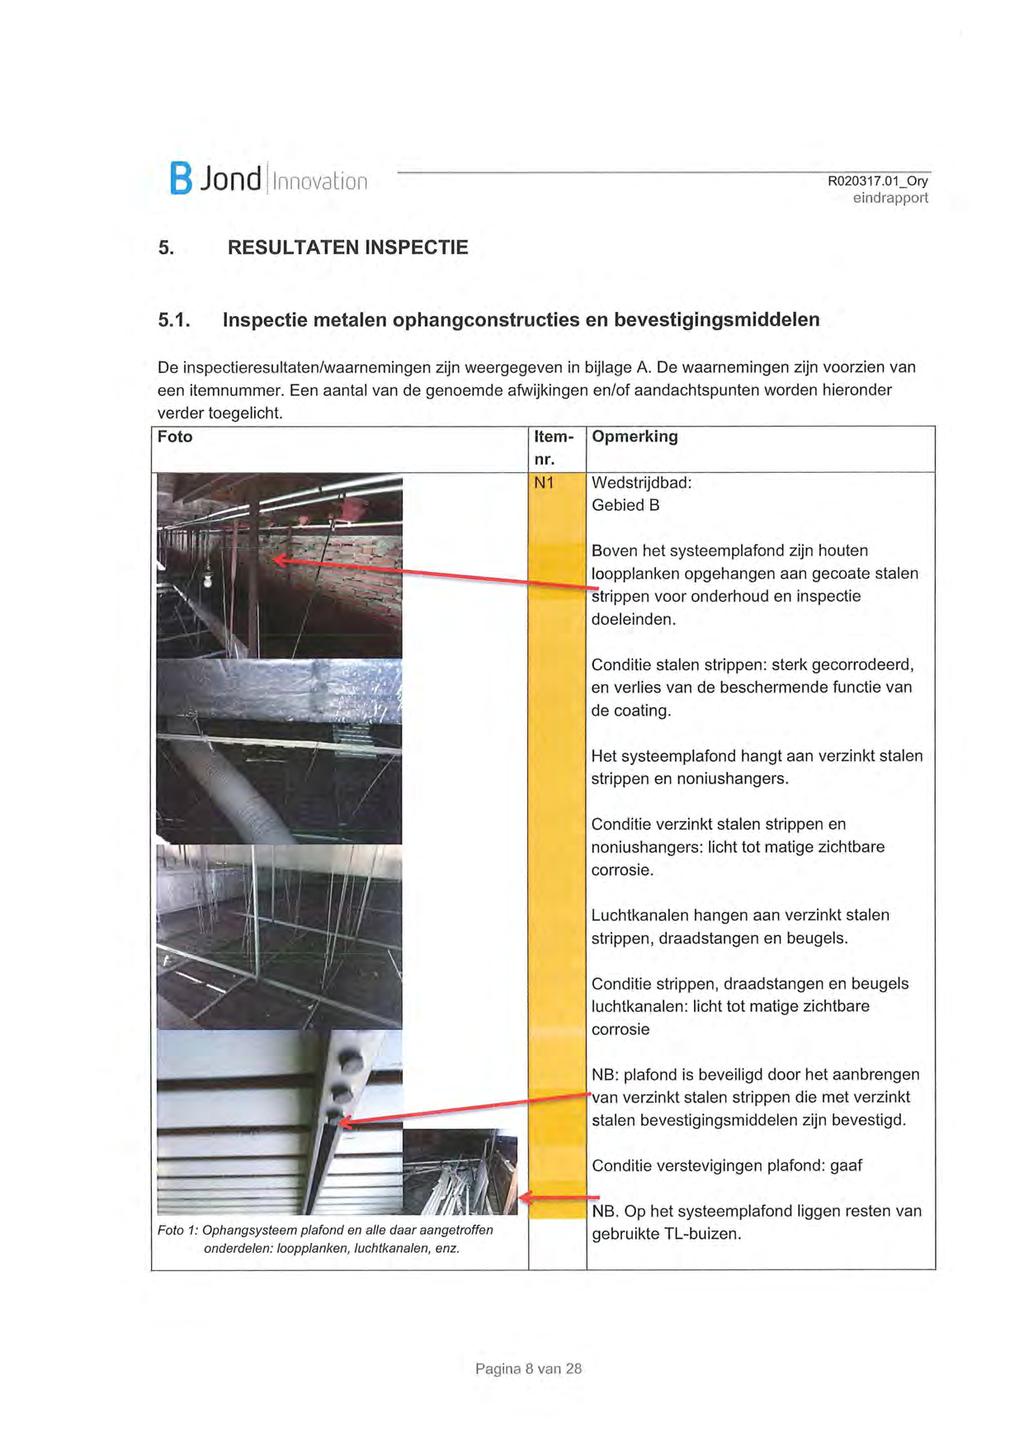 B JOfld Innovation R0203i7.oï_ory 5. RESULTATEN INSPECTIE 5.1. Inspectie metalen ophangconstructles en bevestigingsmiddelen De inspectieresultaten/waarnemingen zijn weergegeven in bijlage A.